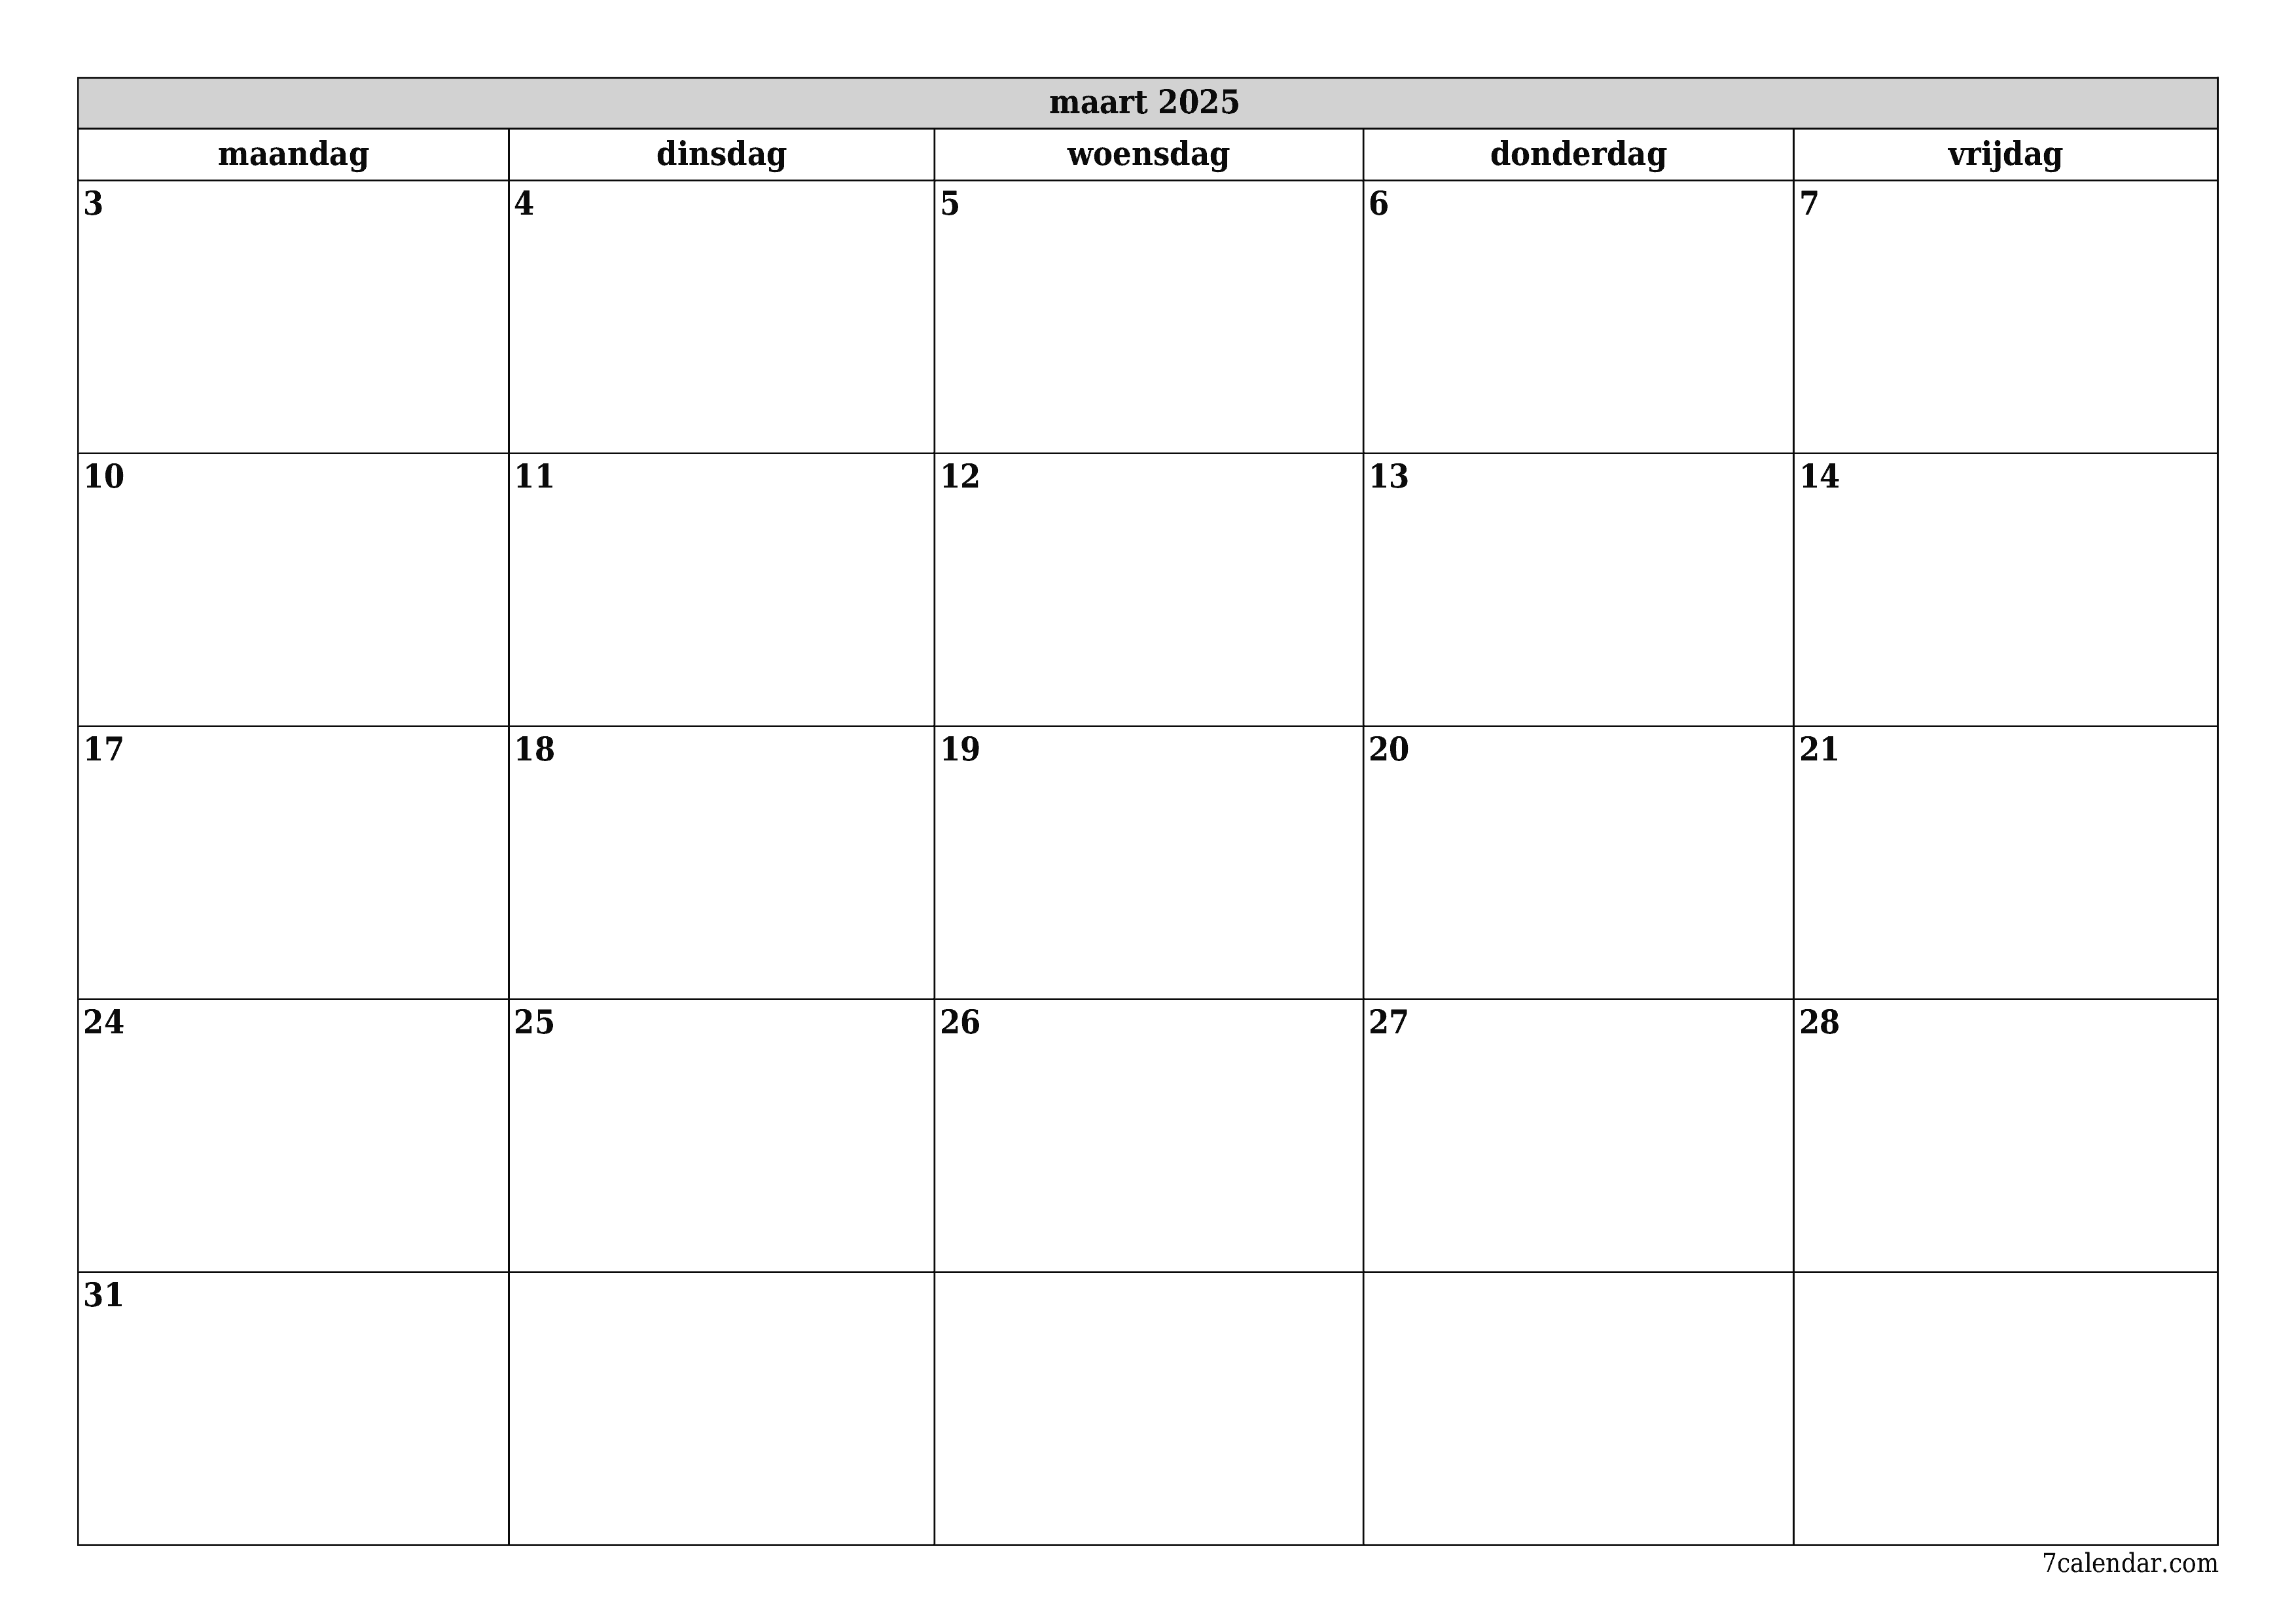 Lege maandplanner voor maand maart 2025 met notities, opslaan en afdrukken naar pdf PNG Dutch